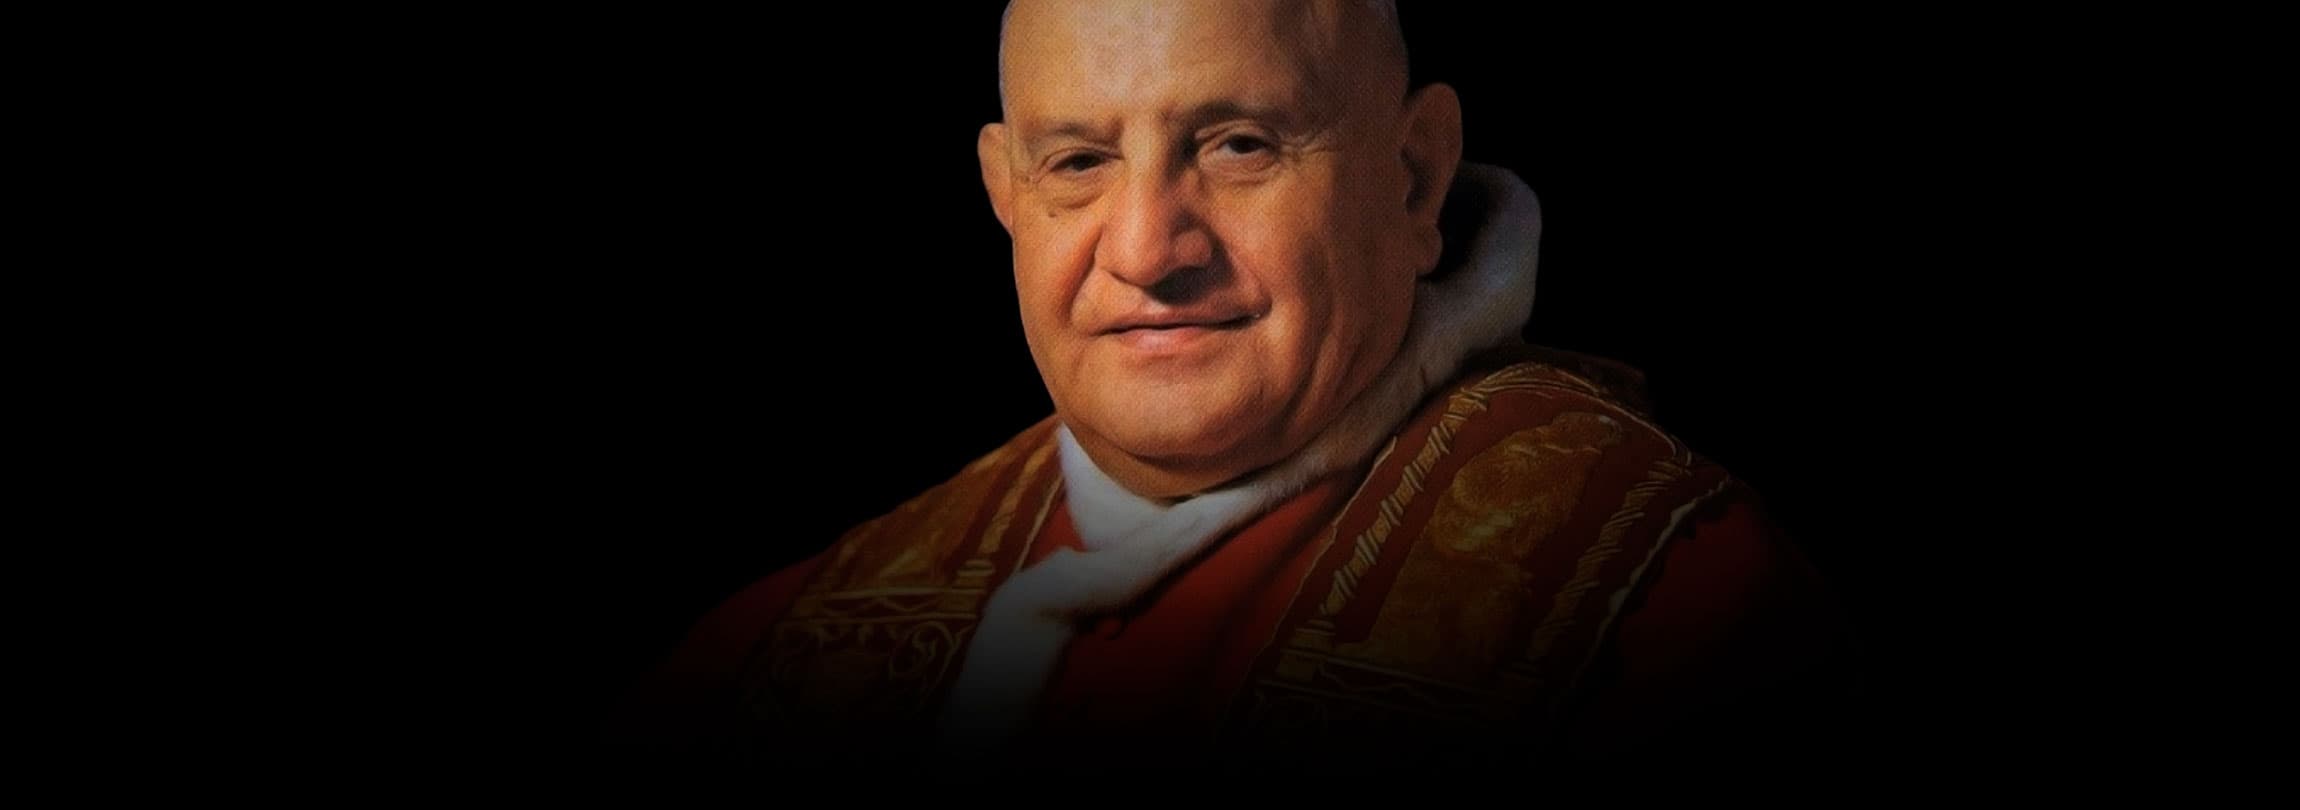 O sonho de João XXIII, o Papa bom